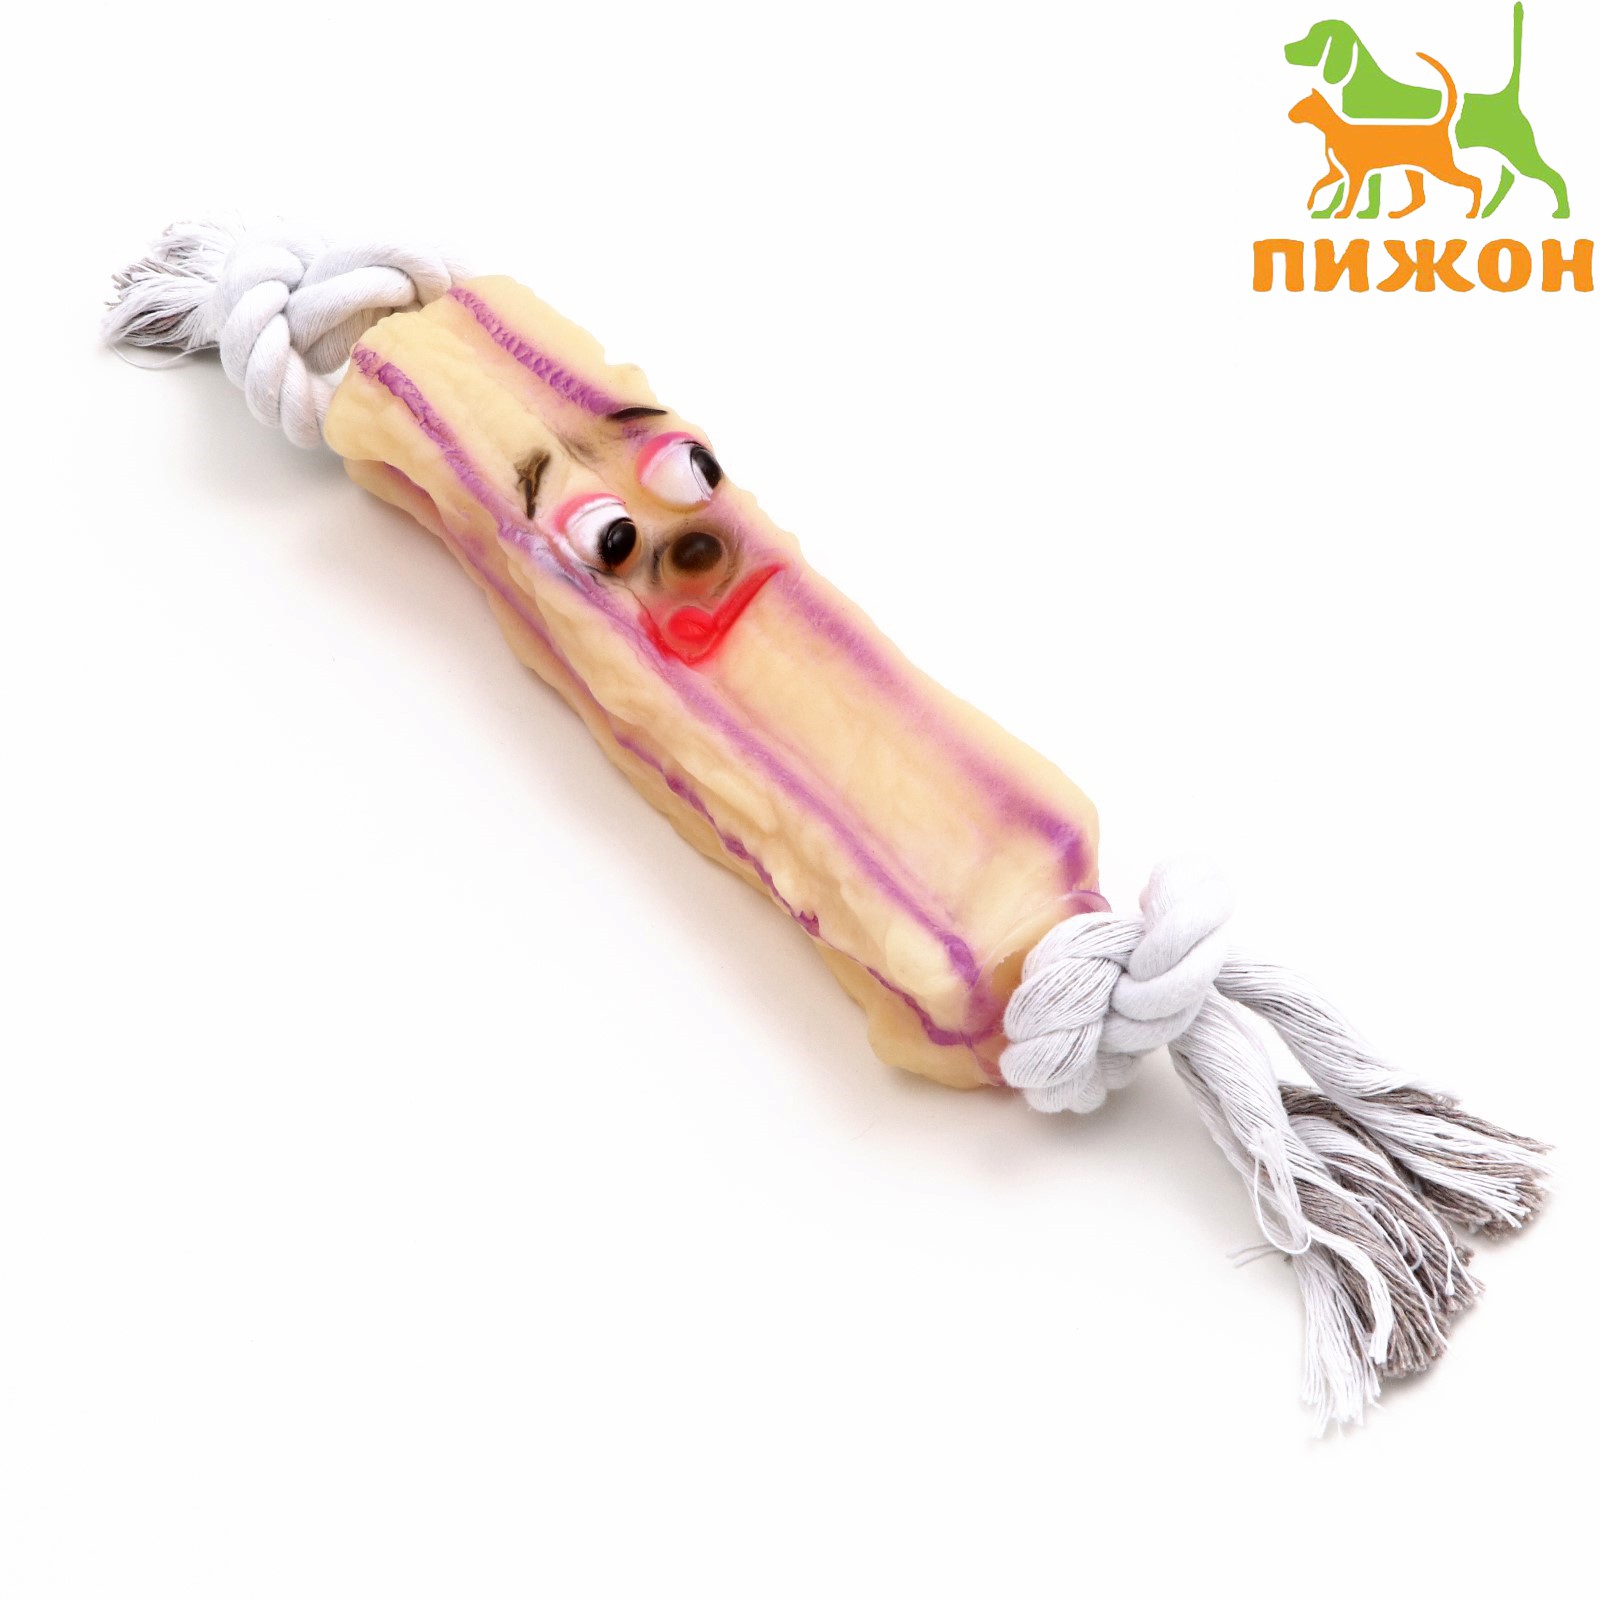 Игрушка Пижон на канате «Грустная палка» для собак 30 см игрушка 15.5 см - фото 1